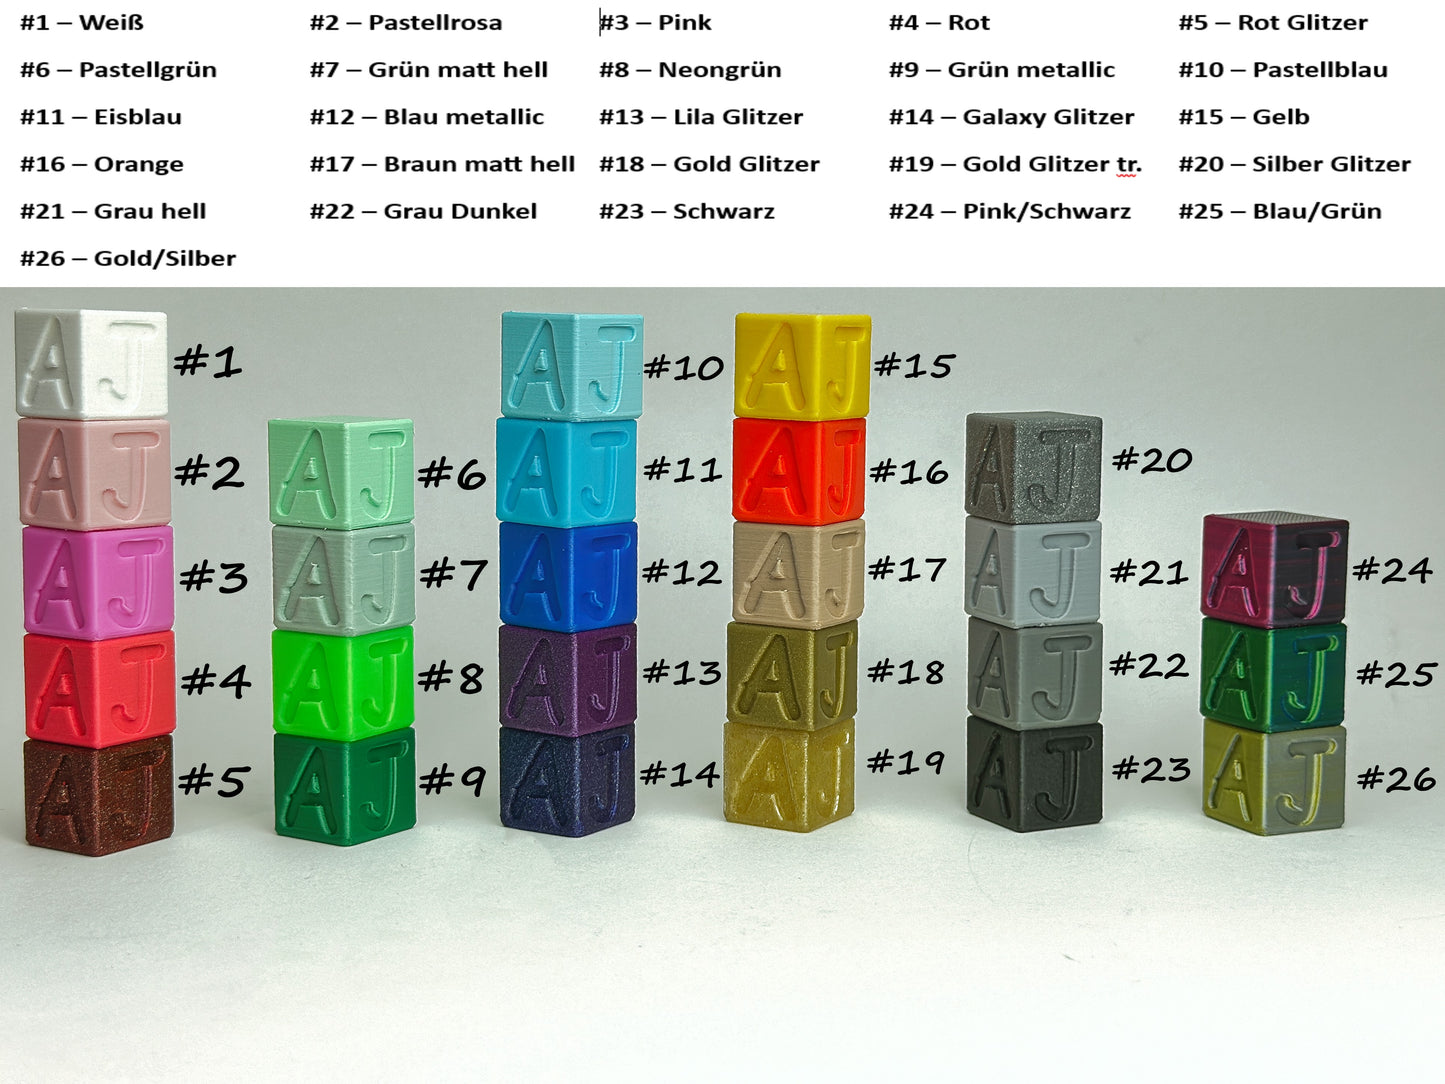 CLASSIC Diamond Painting Tower: Stilvolle Aufbewahrung für 8 Schiffchen in Ihrer Wunschfarbe!